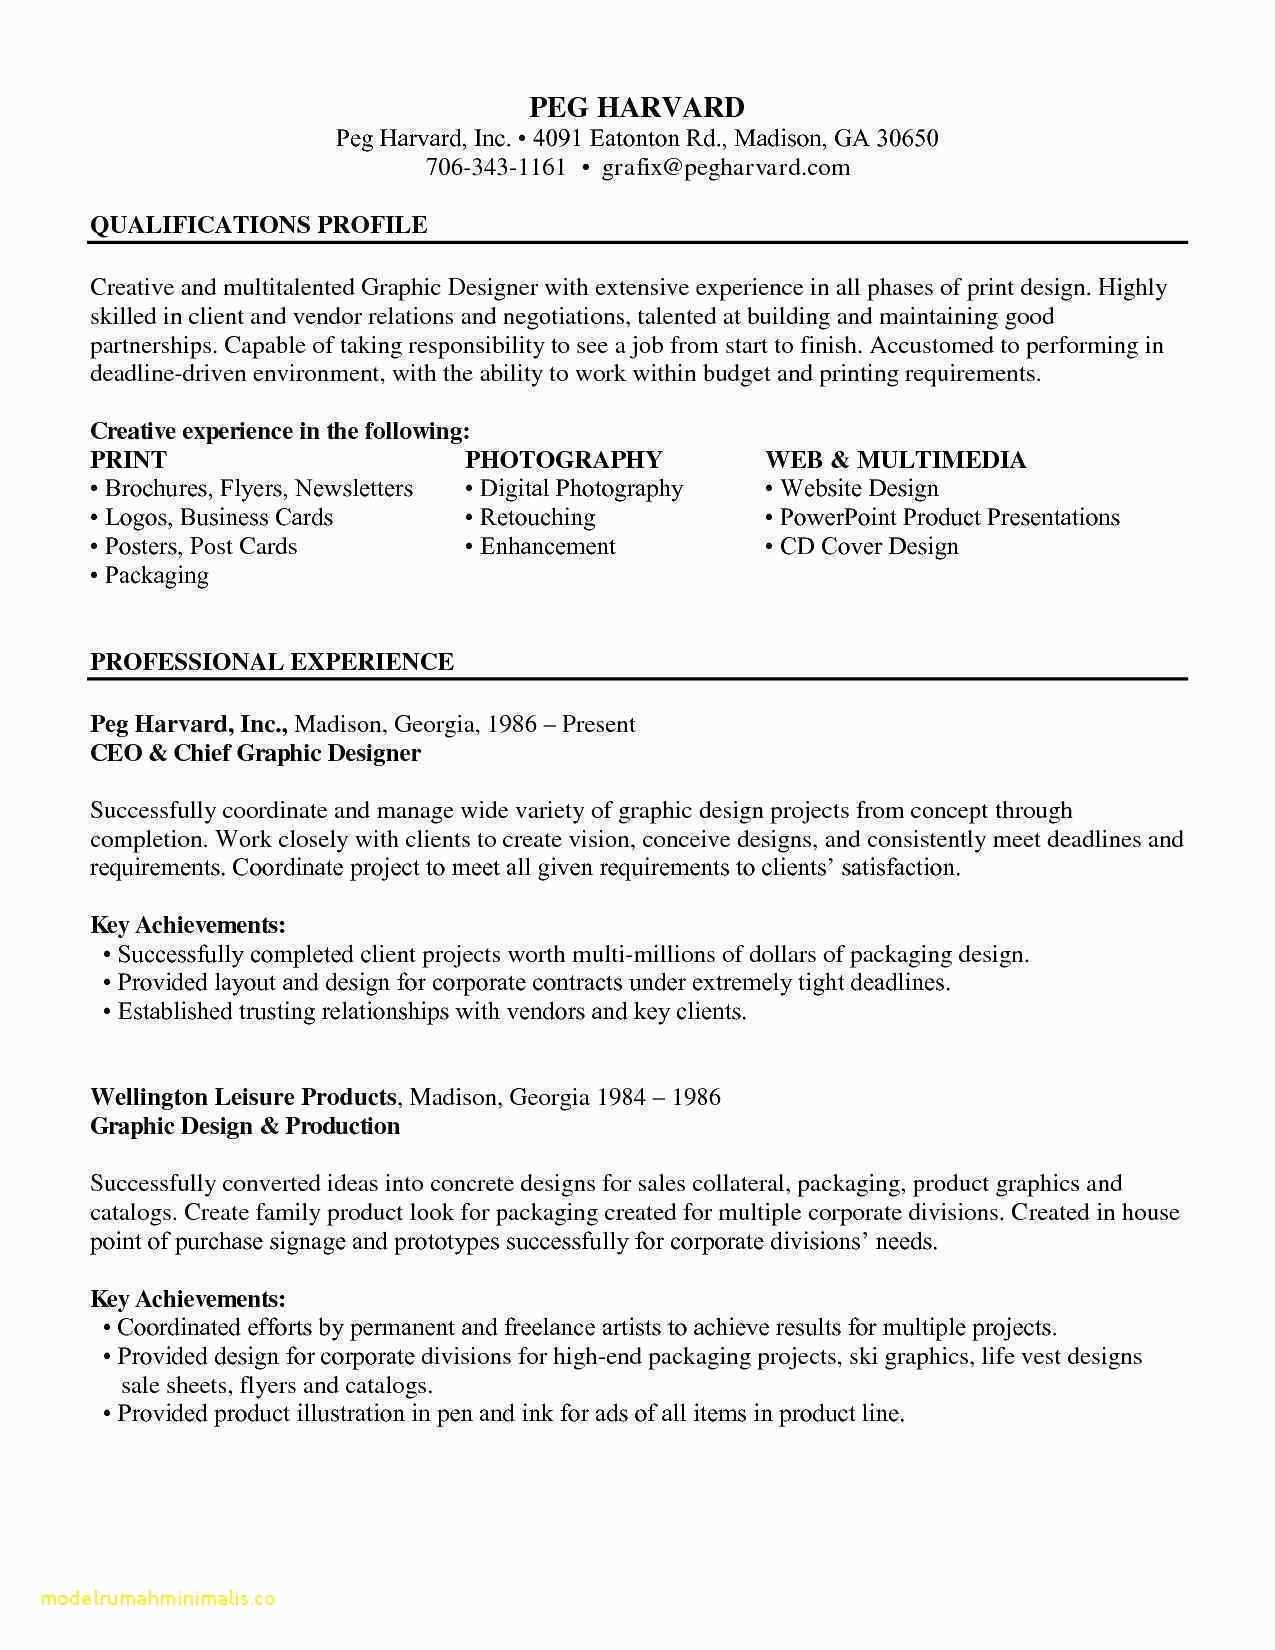 harvard resume template free download